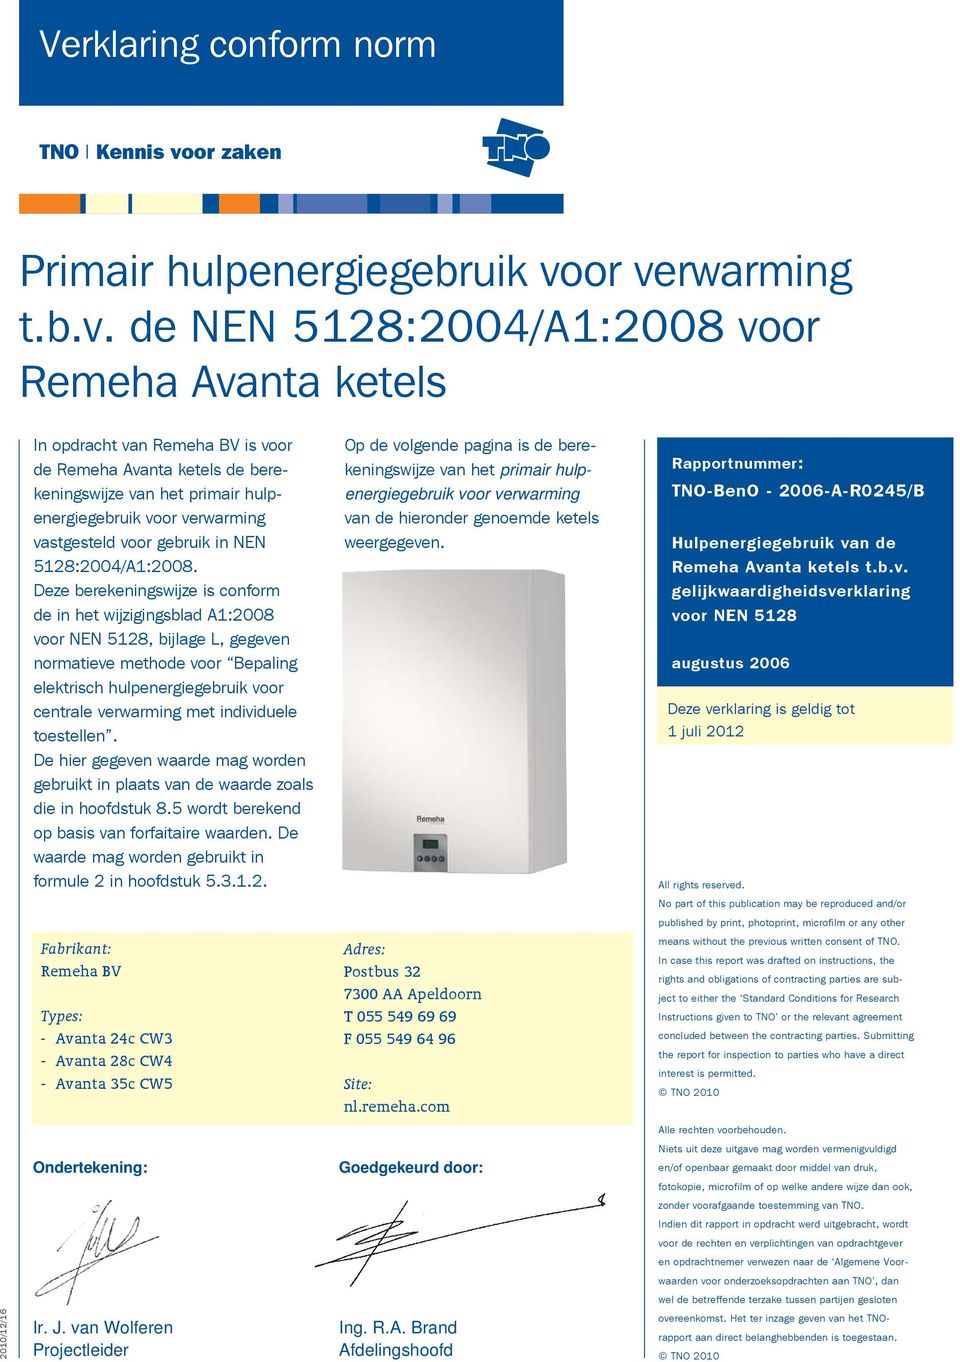 or verwarming t.b.v. de NEN 5128:2004/A1:2008 voor Remeha Avanta ketels In opdracht van Remeha BV is voor de Remeha Avanta ketels de berekeningswijze van het primair hulpenergiegebruik voor